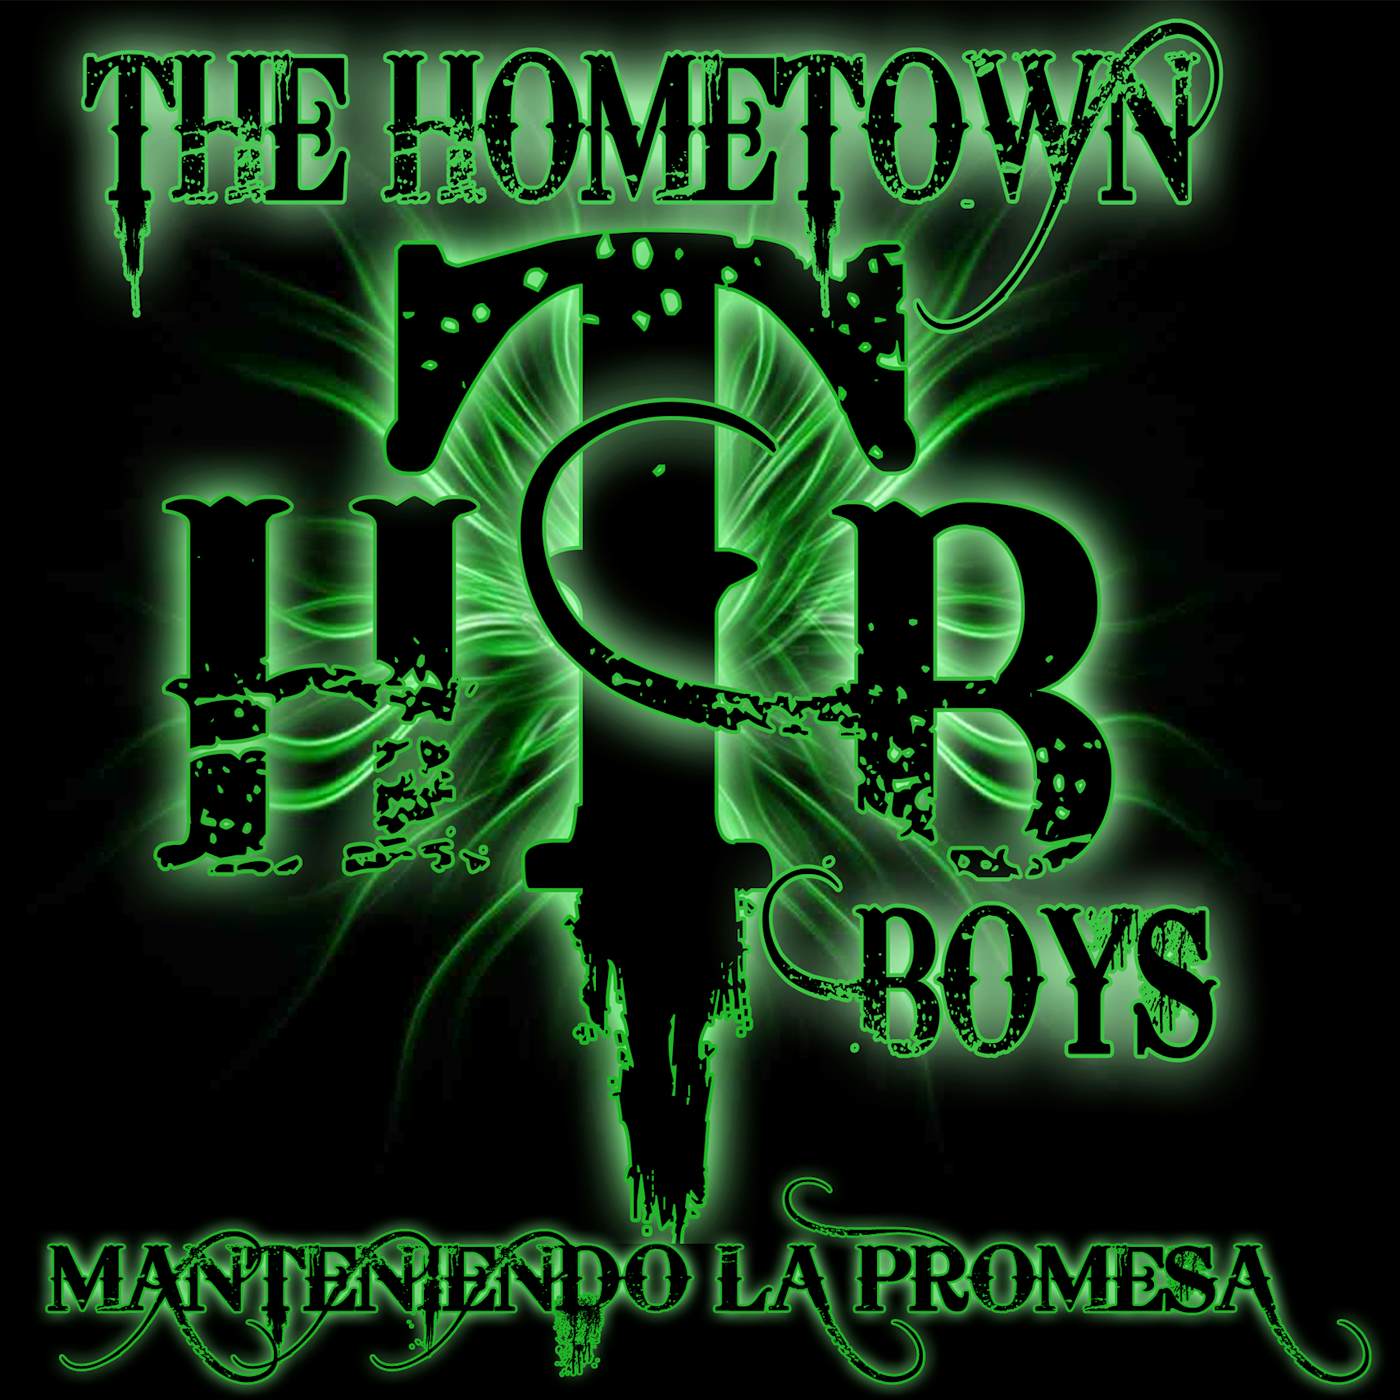 The Hometown Boys MANTENIENDO LA PROMESA CD